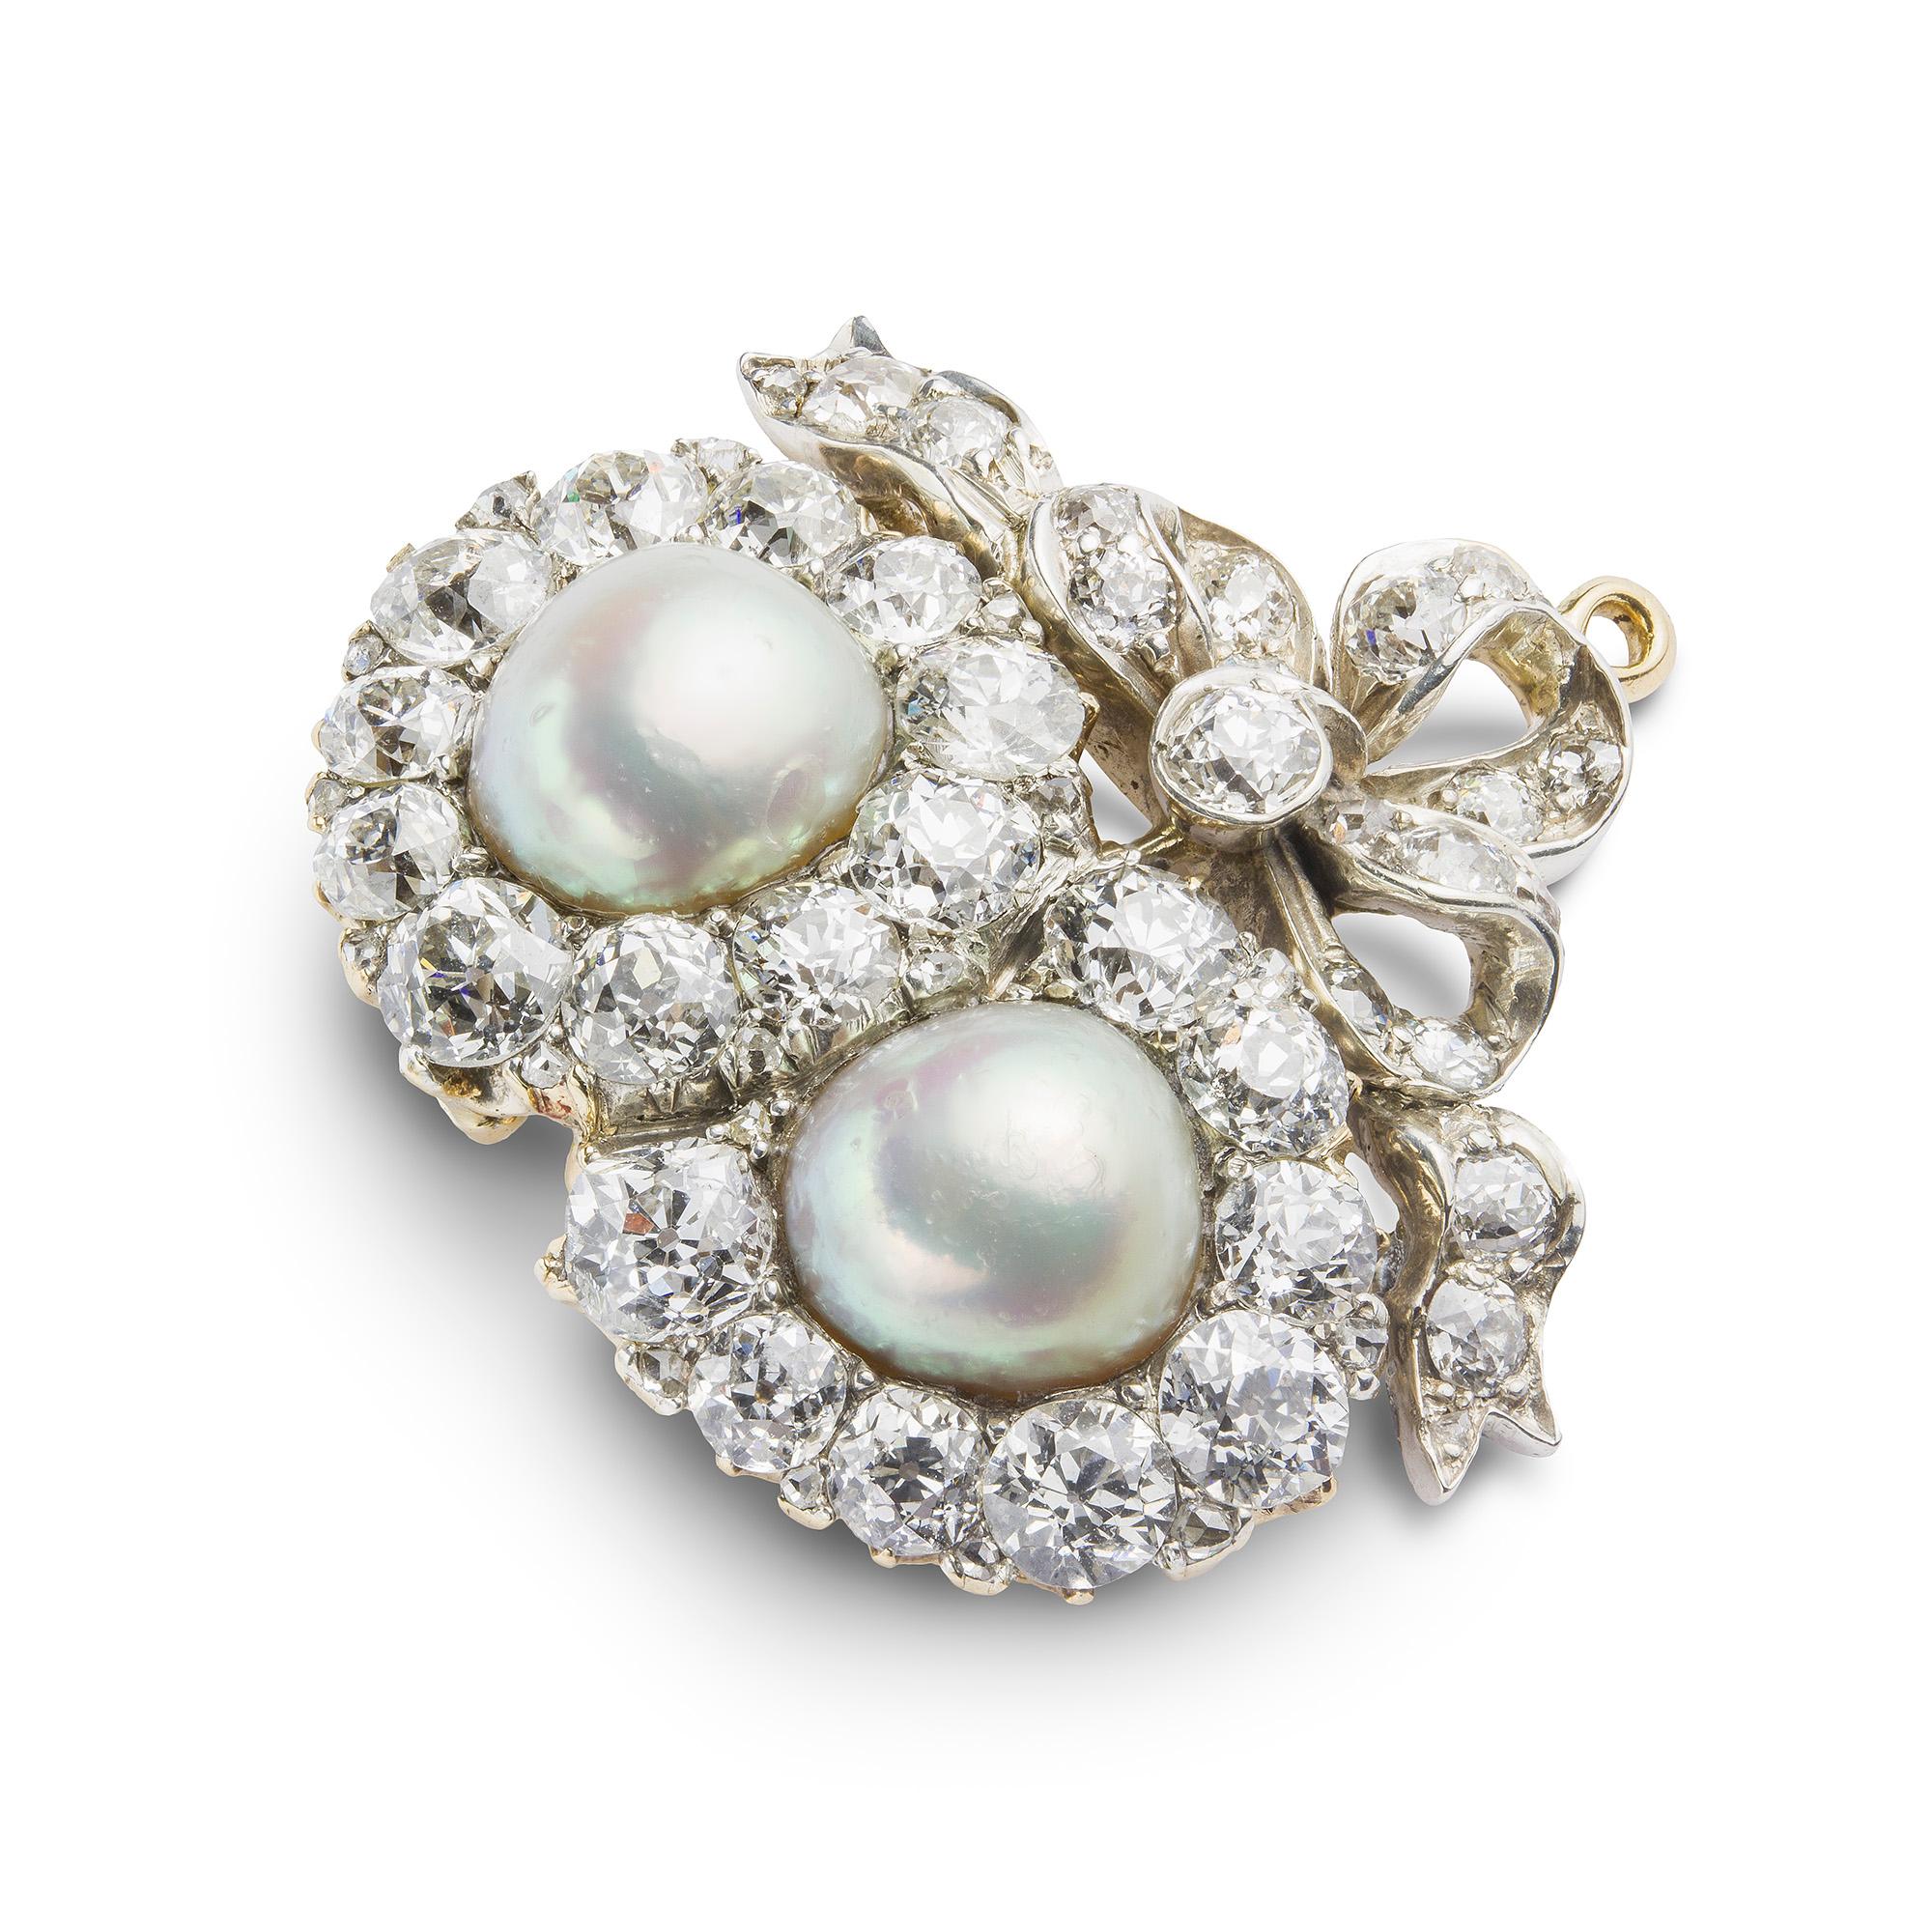 Eine viktorianische Perlen- und Diamant-Doppelherz-Brosche, jedes Herz besetzt mit einer natürlichen ovalen knopfförmigen Salzwasserperle in der Mitte einer alten Brillantfassung, mit einer diamantbesetzten Schleifenfassung, die Diamanten haben